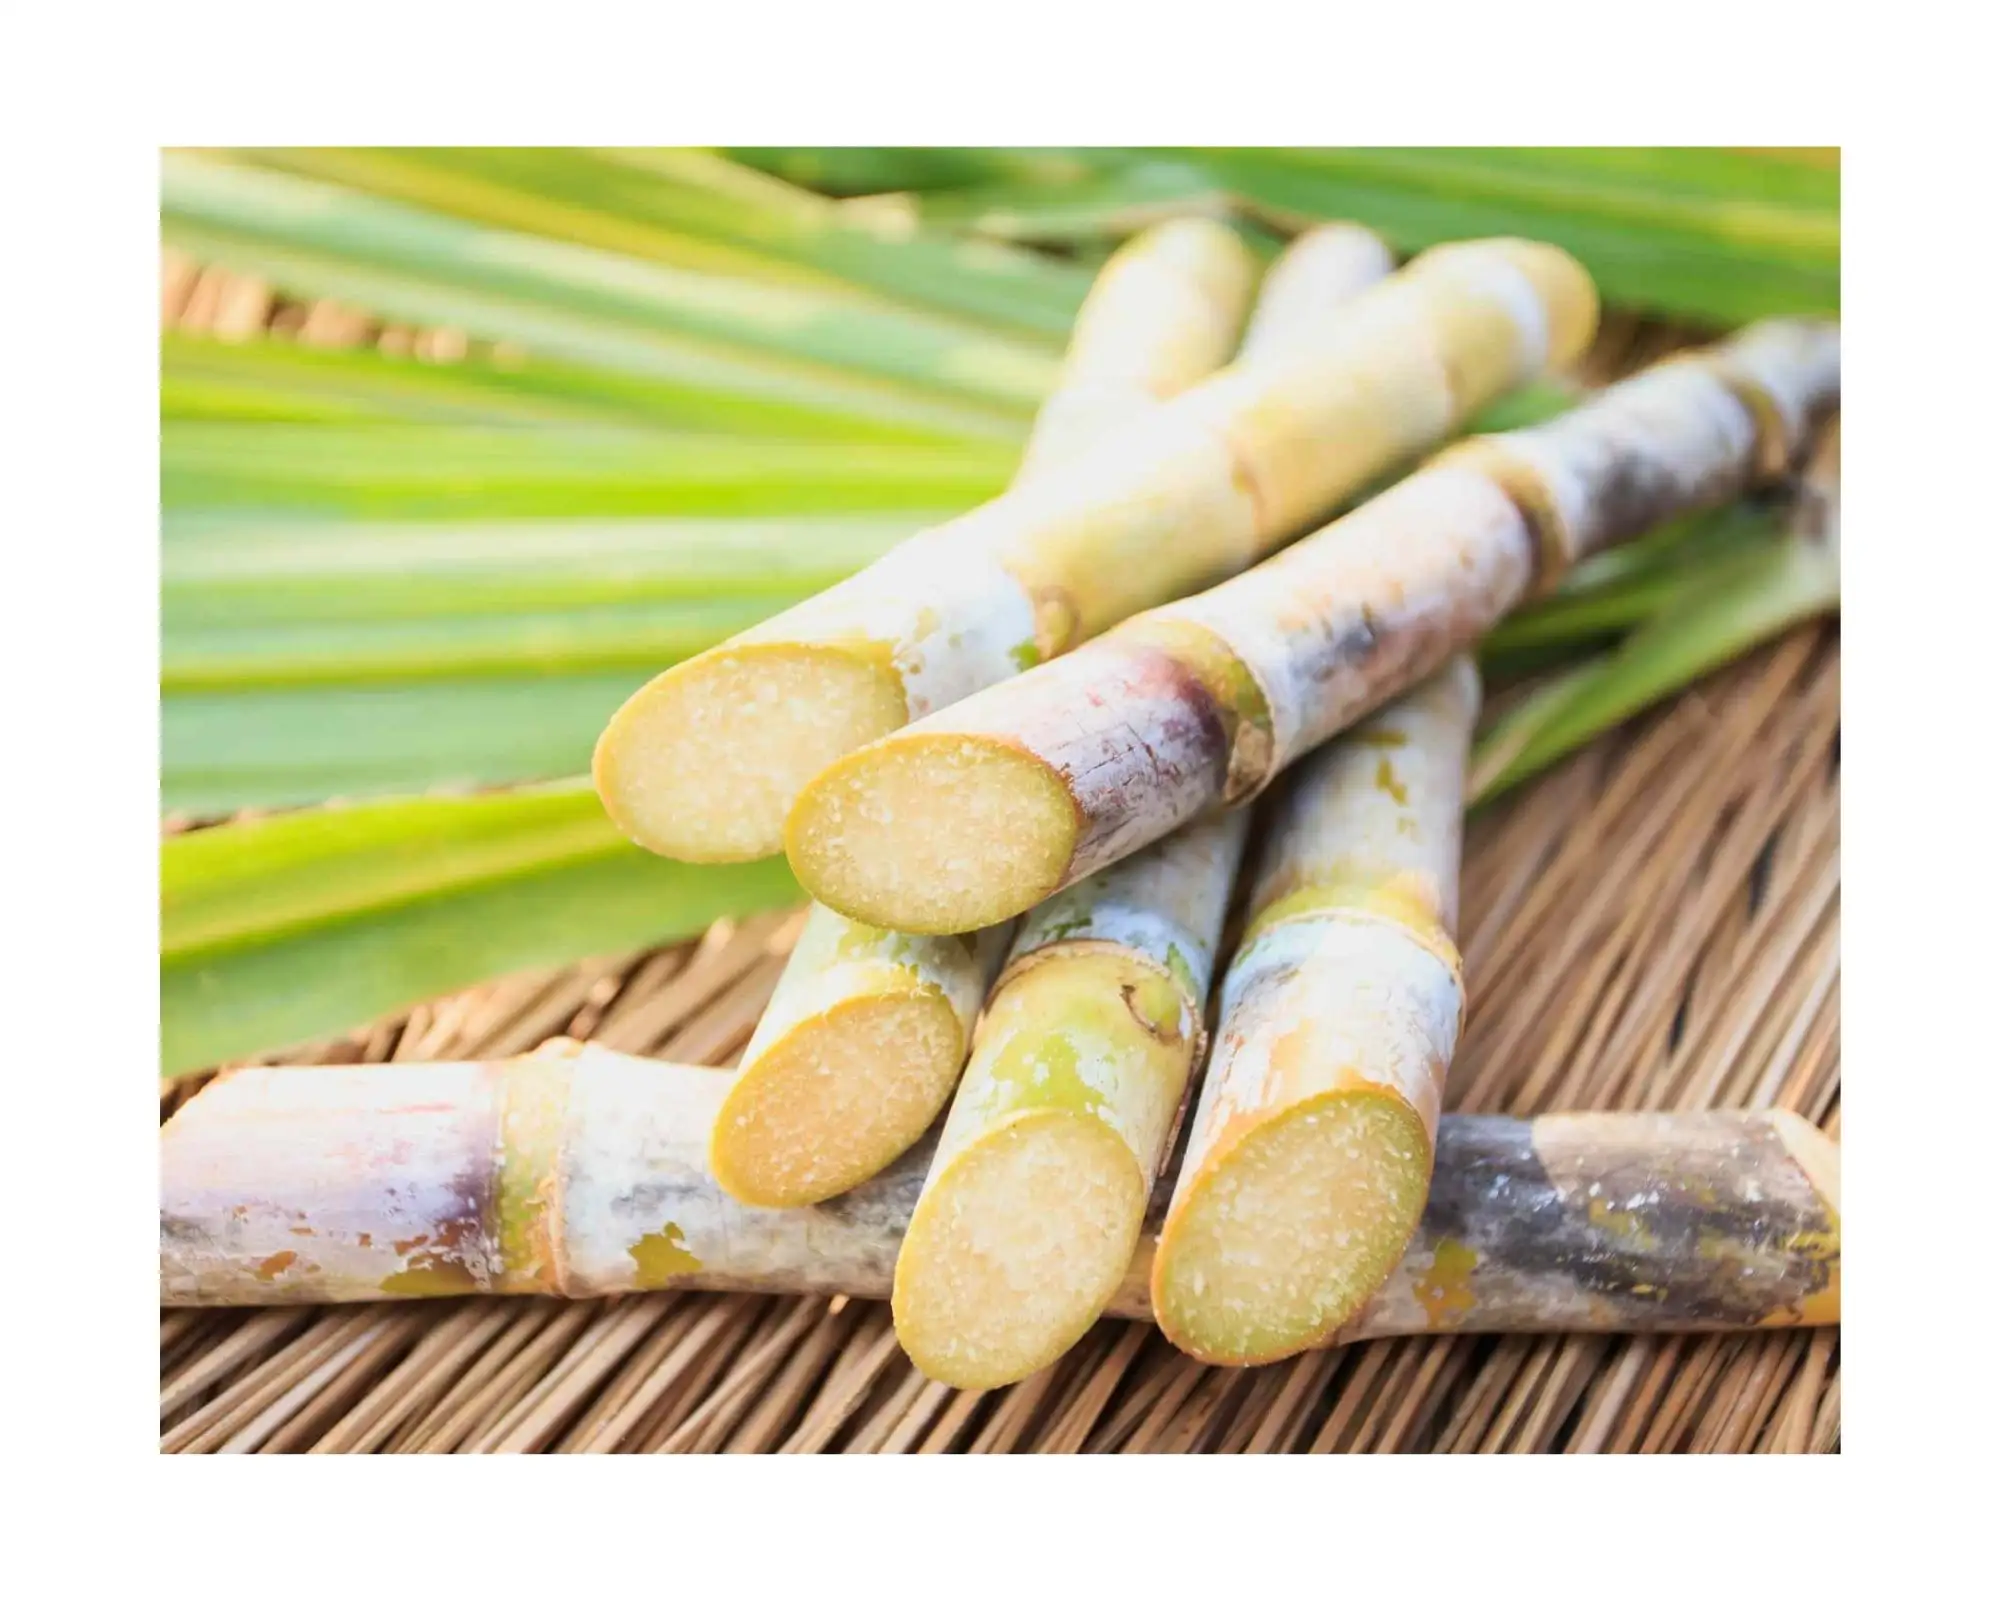 Prodotti agricoli canna da zucchero congelata di alta qualità Vietnam canna da zucchero bastone materie prime fresche ISO alimentare per cucinare-bere